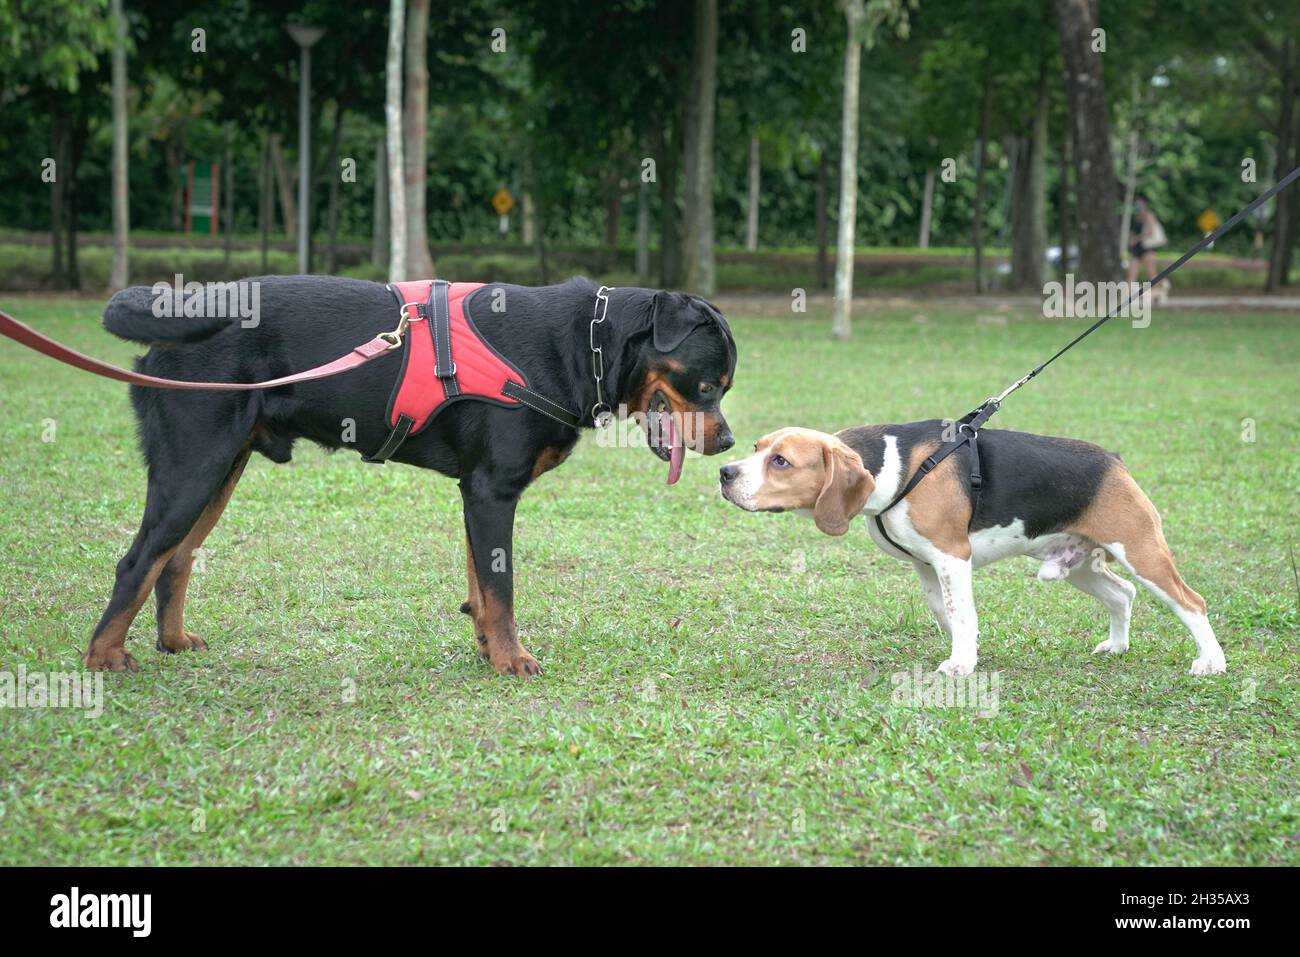 Dos perros, Beagle y Rottweiler, se saludan unos a otros. Concepto de socialización de perros. Foto de stock